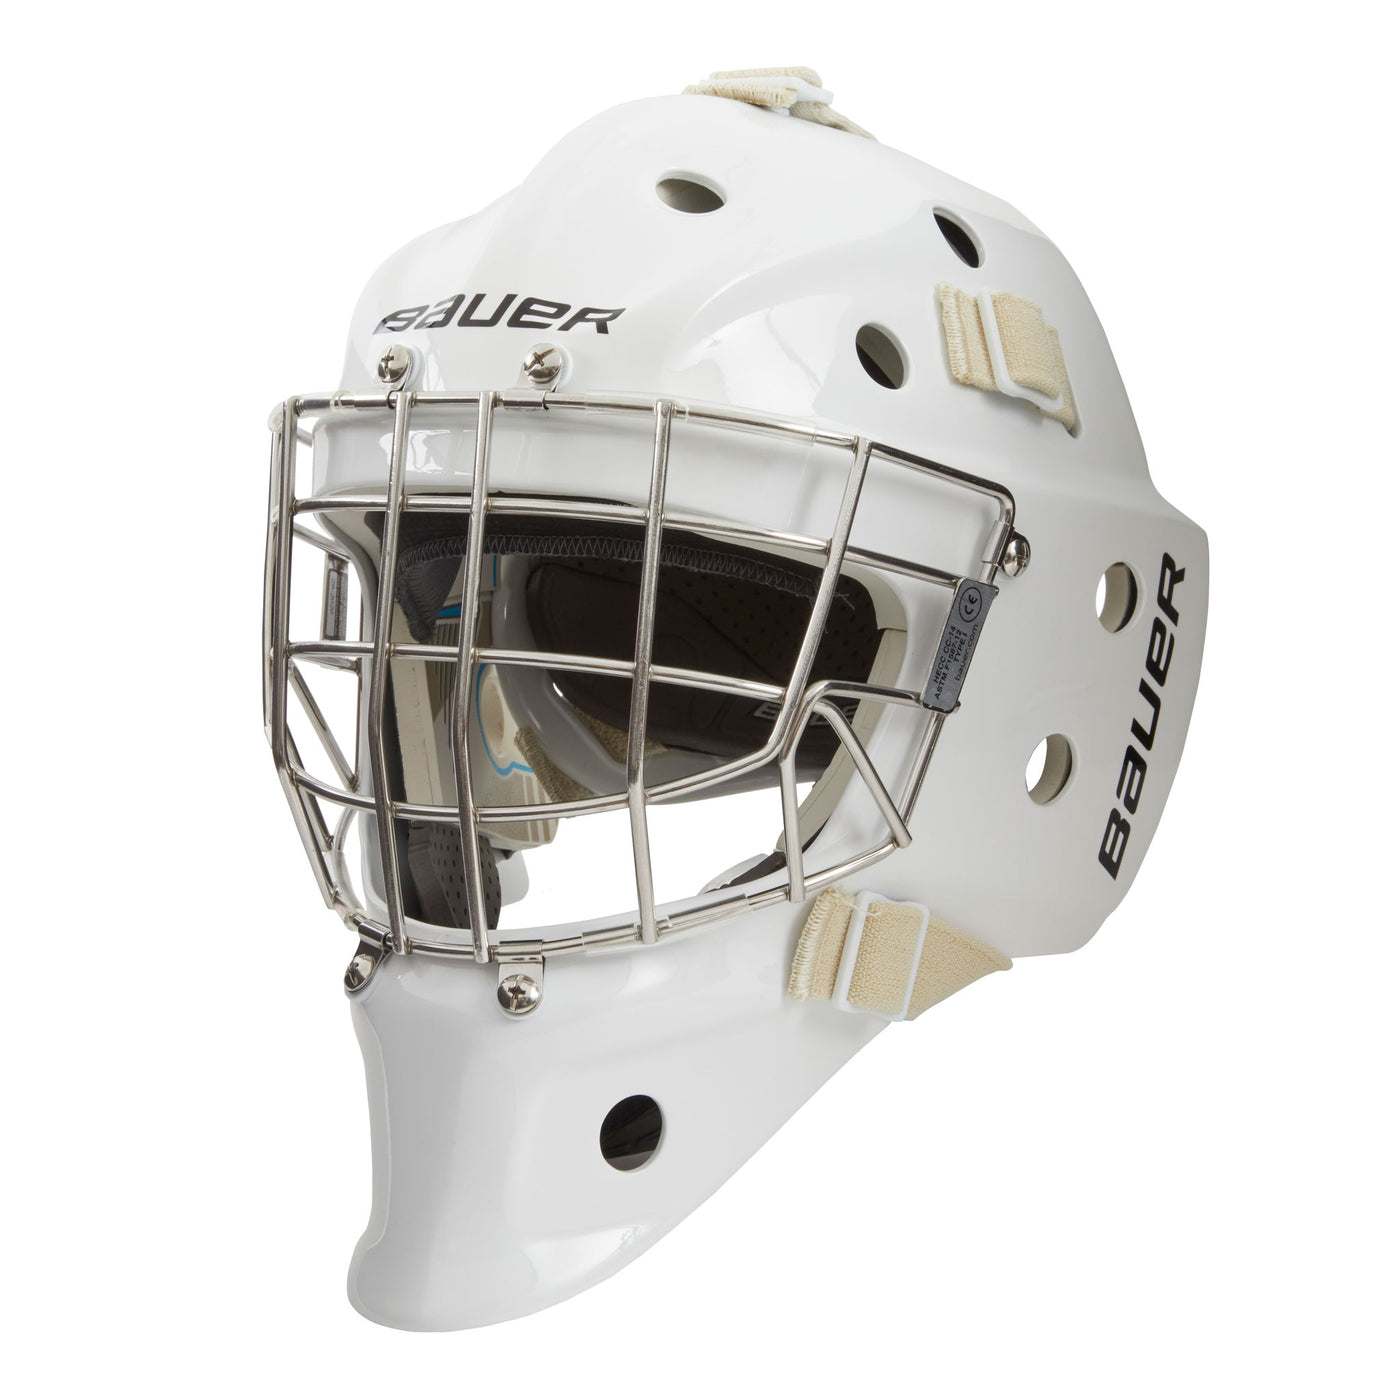 BAUER 940 Goalie Mask - SR (Certified)